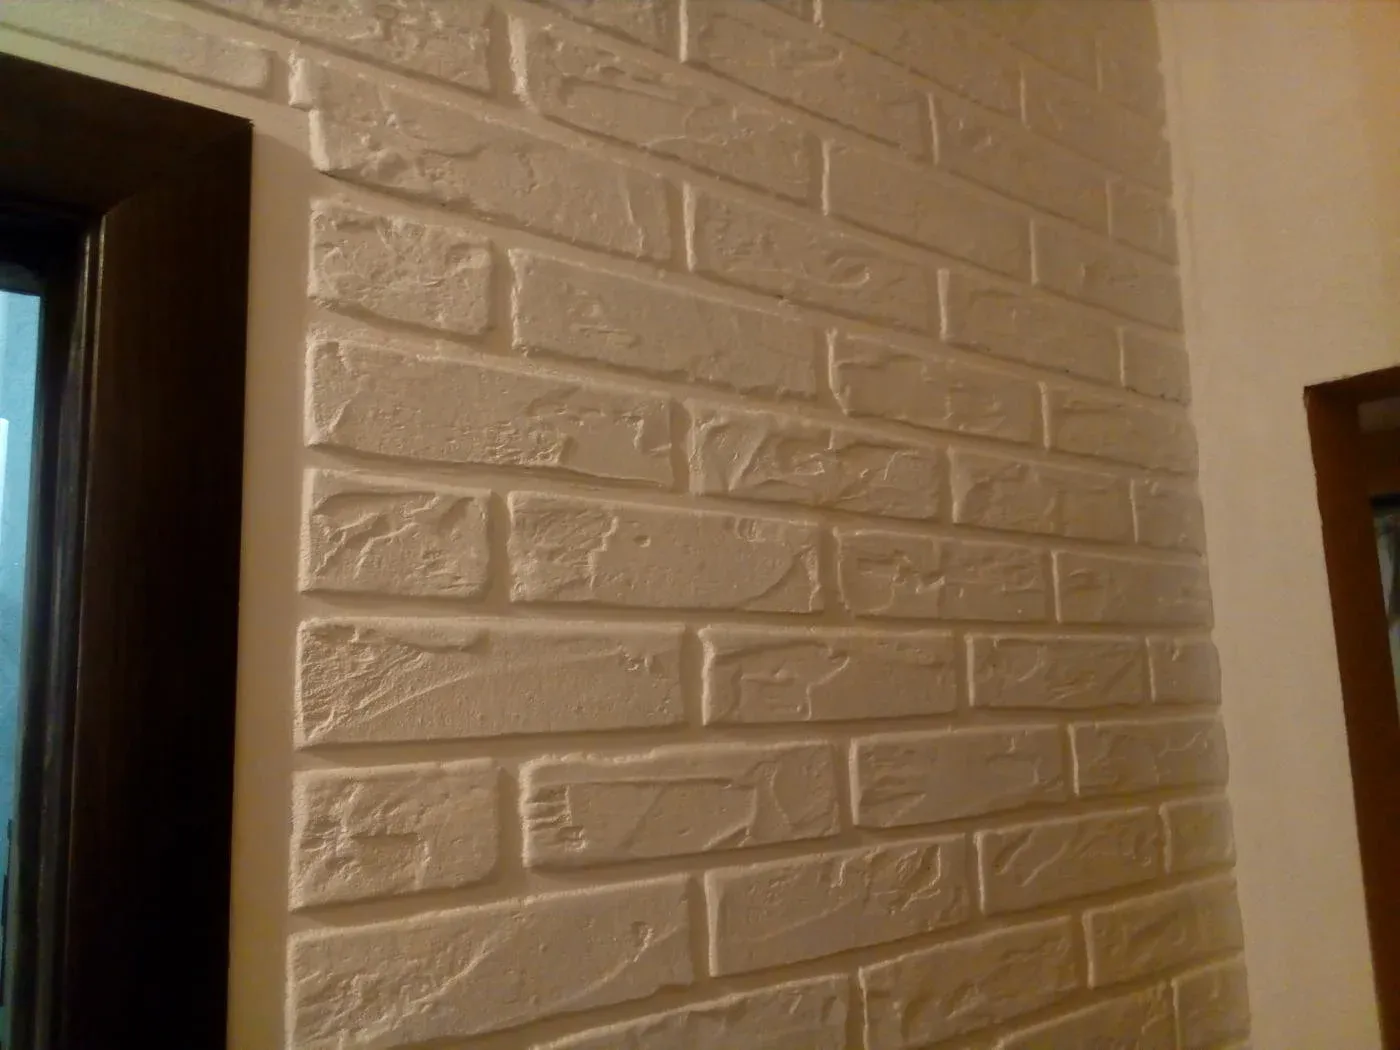 Как сделать декоративную штукатурку под кирпич для внутренней отделки стен в интерьере?